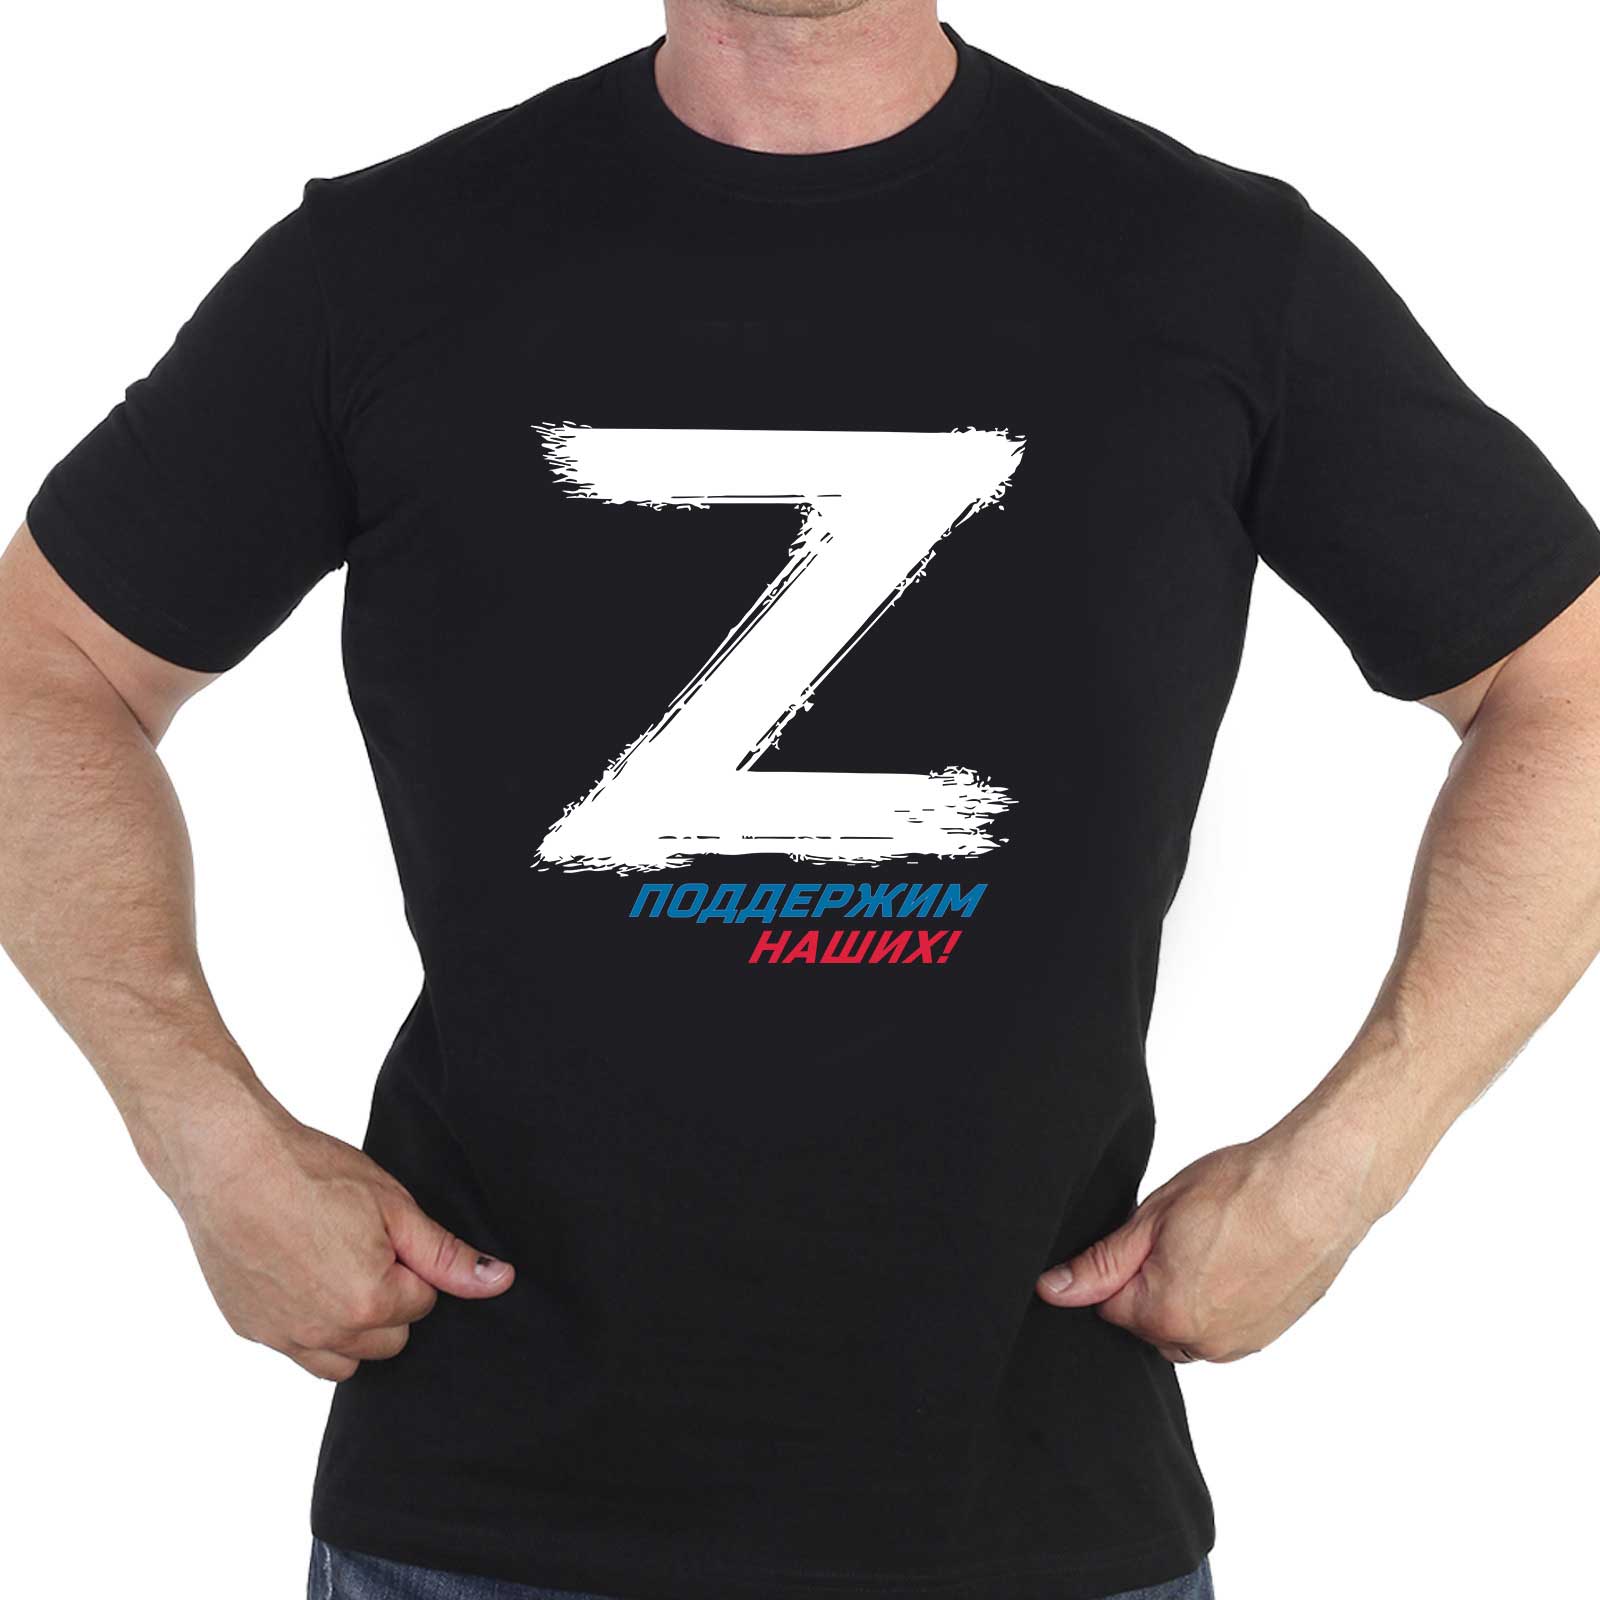 Купить футболку со знаком «Z» и надписью «Поддержим наших!»